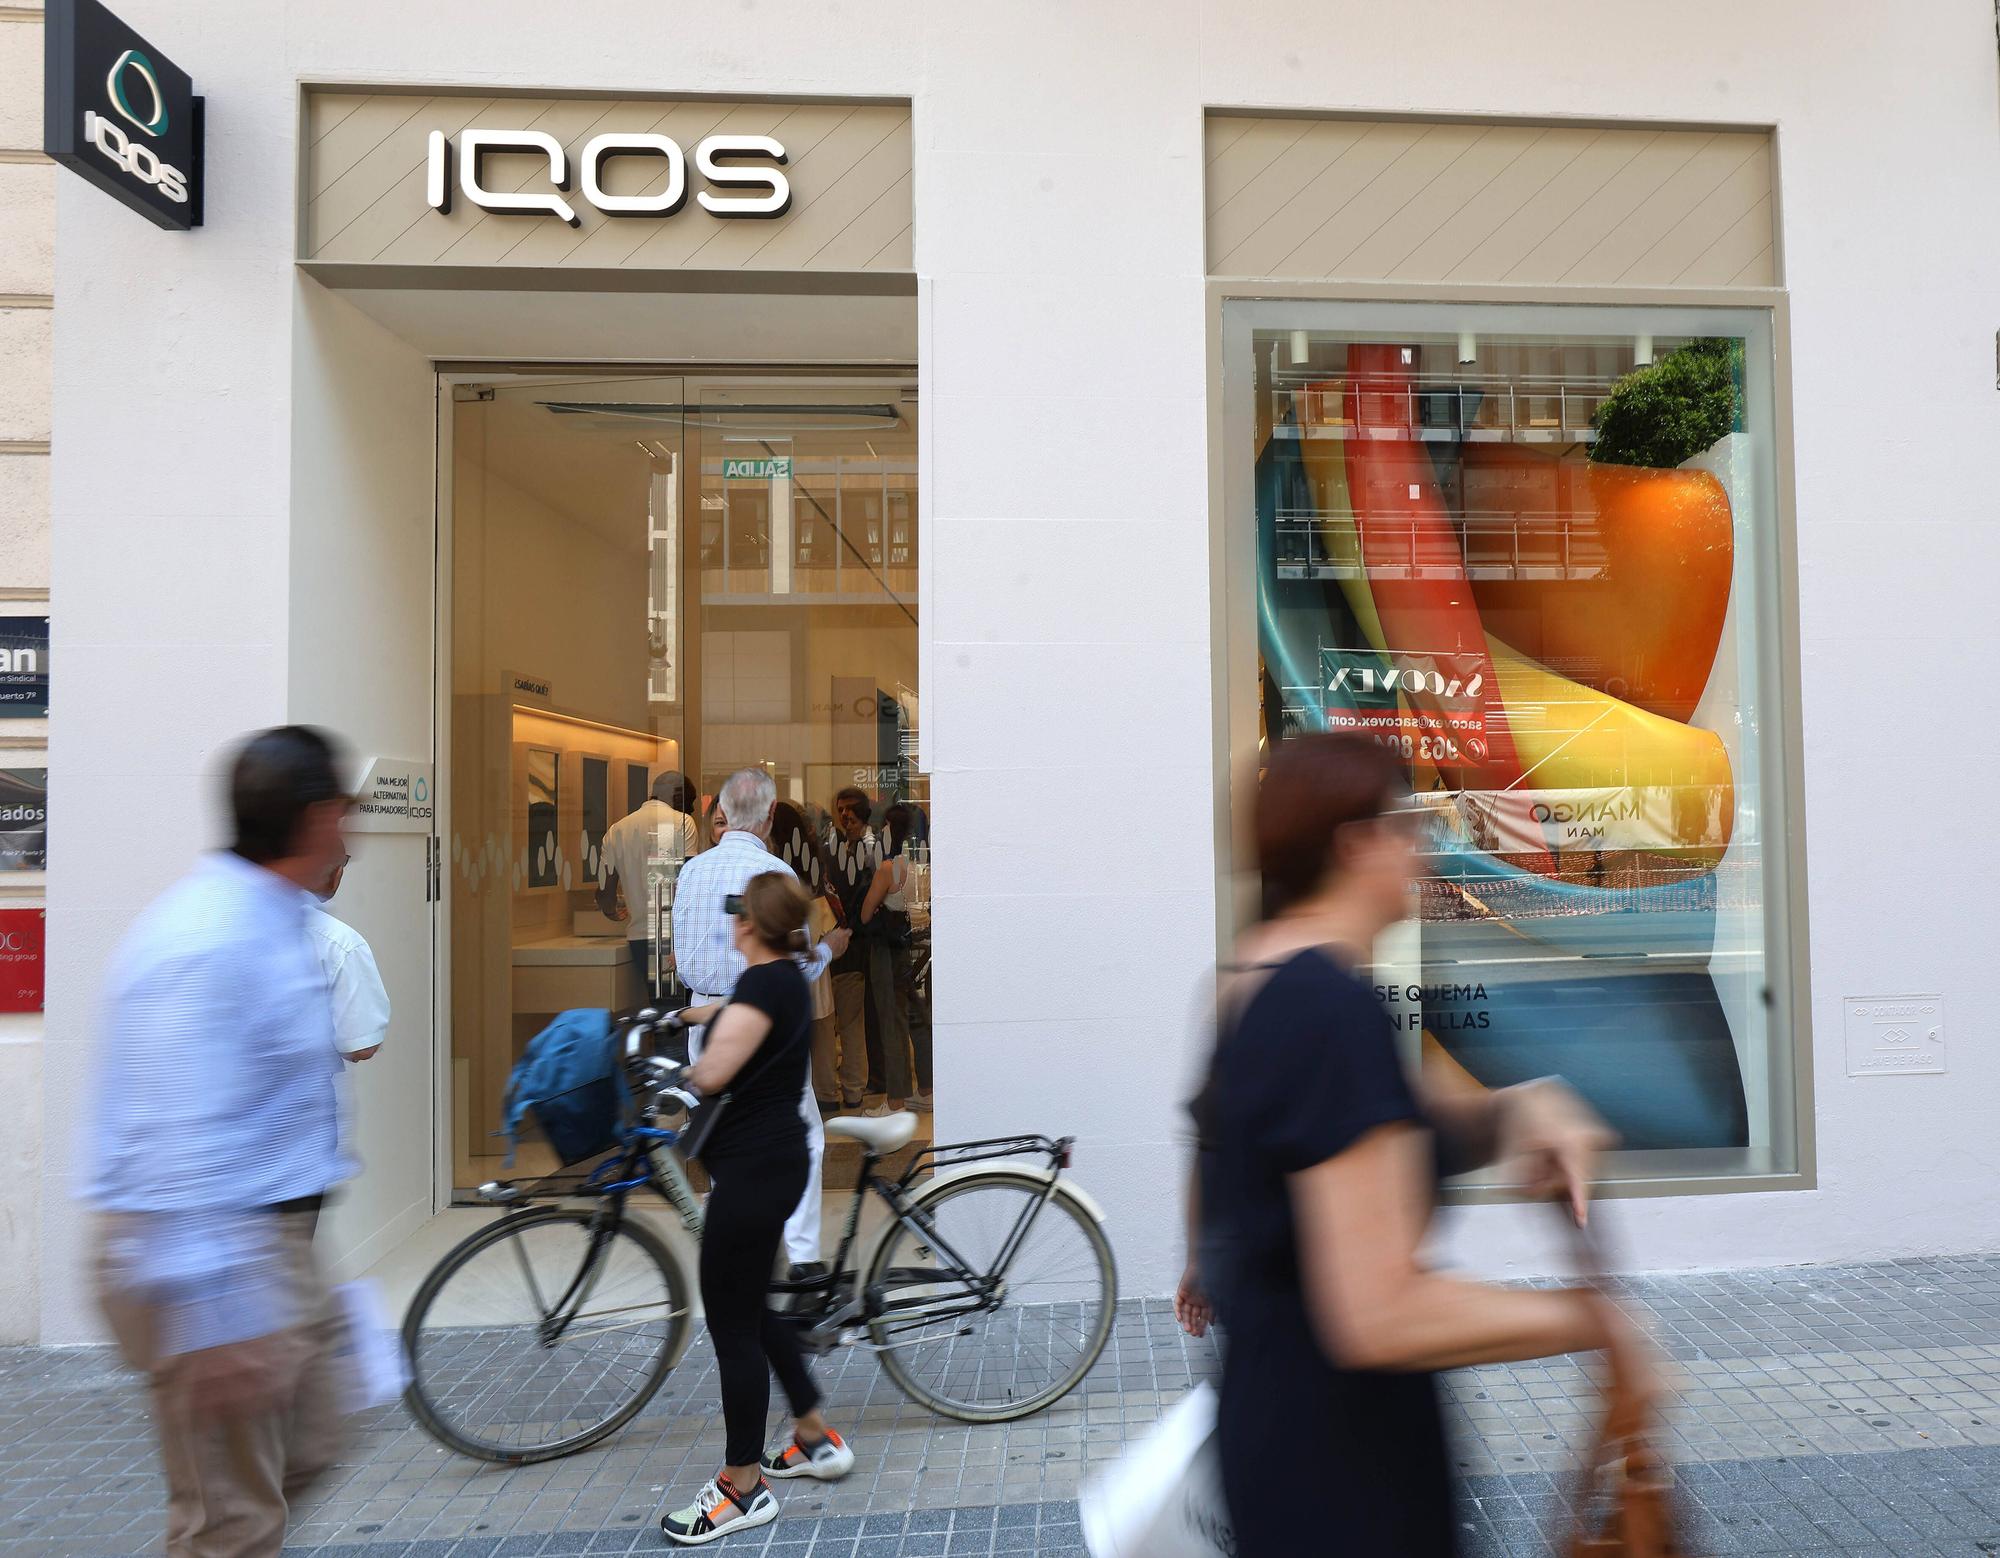 Inaguración de Iqos Boutique de Philip Morris en València.